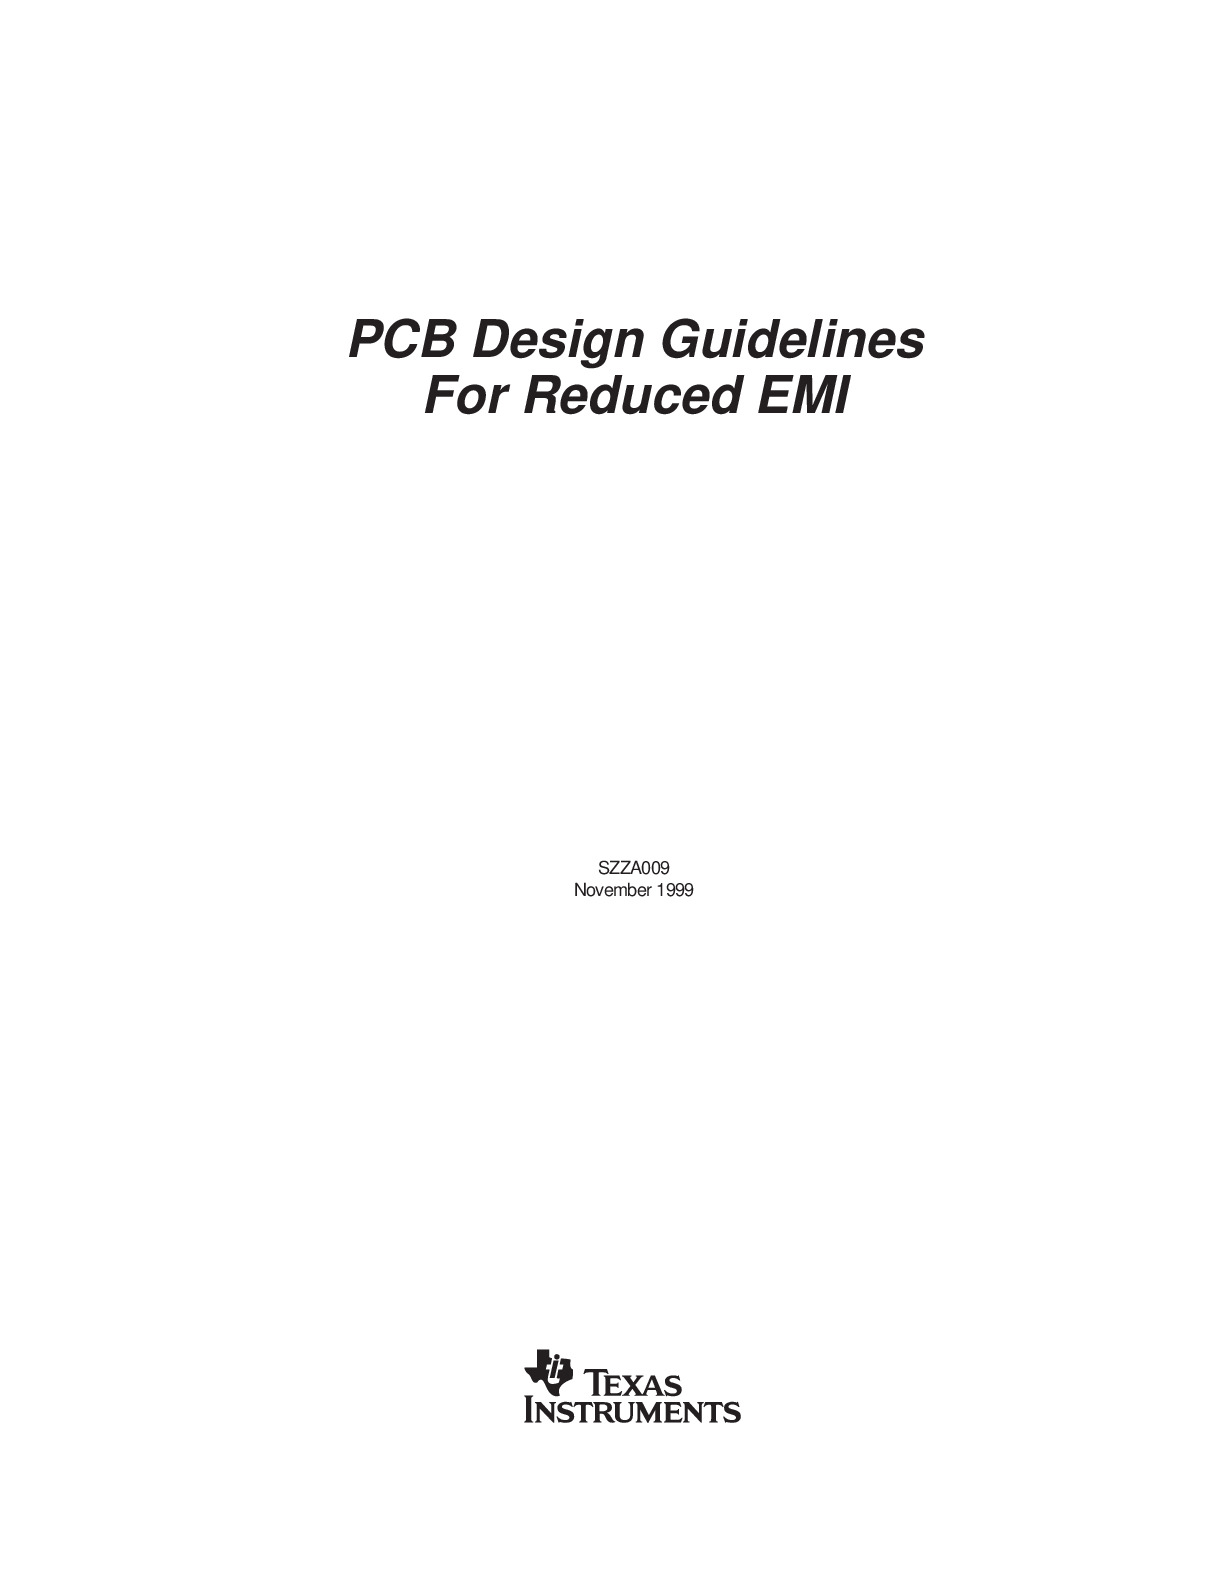 降低EMI的PCB设计指南